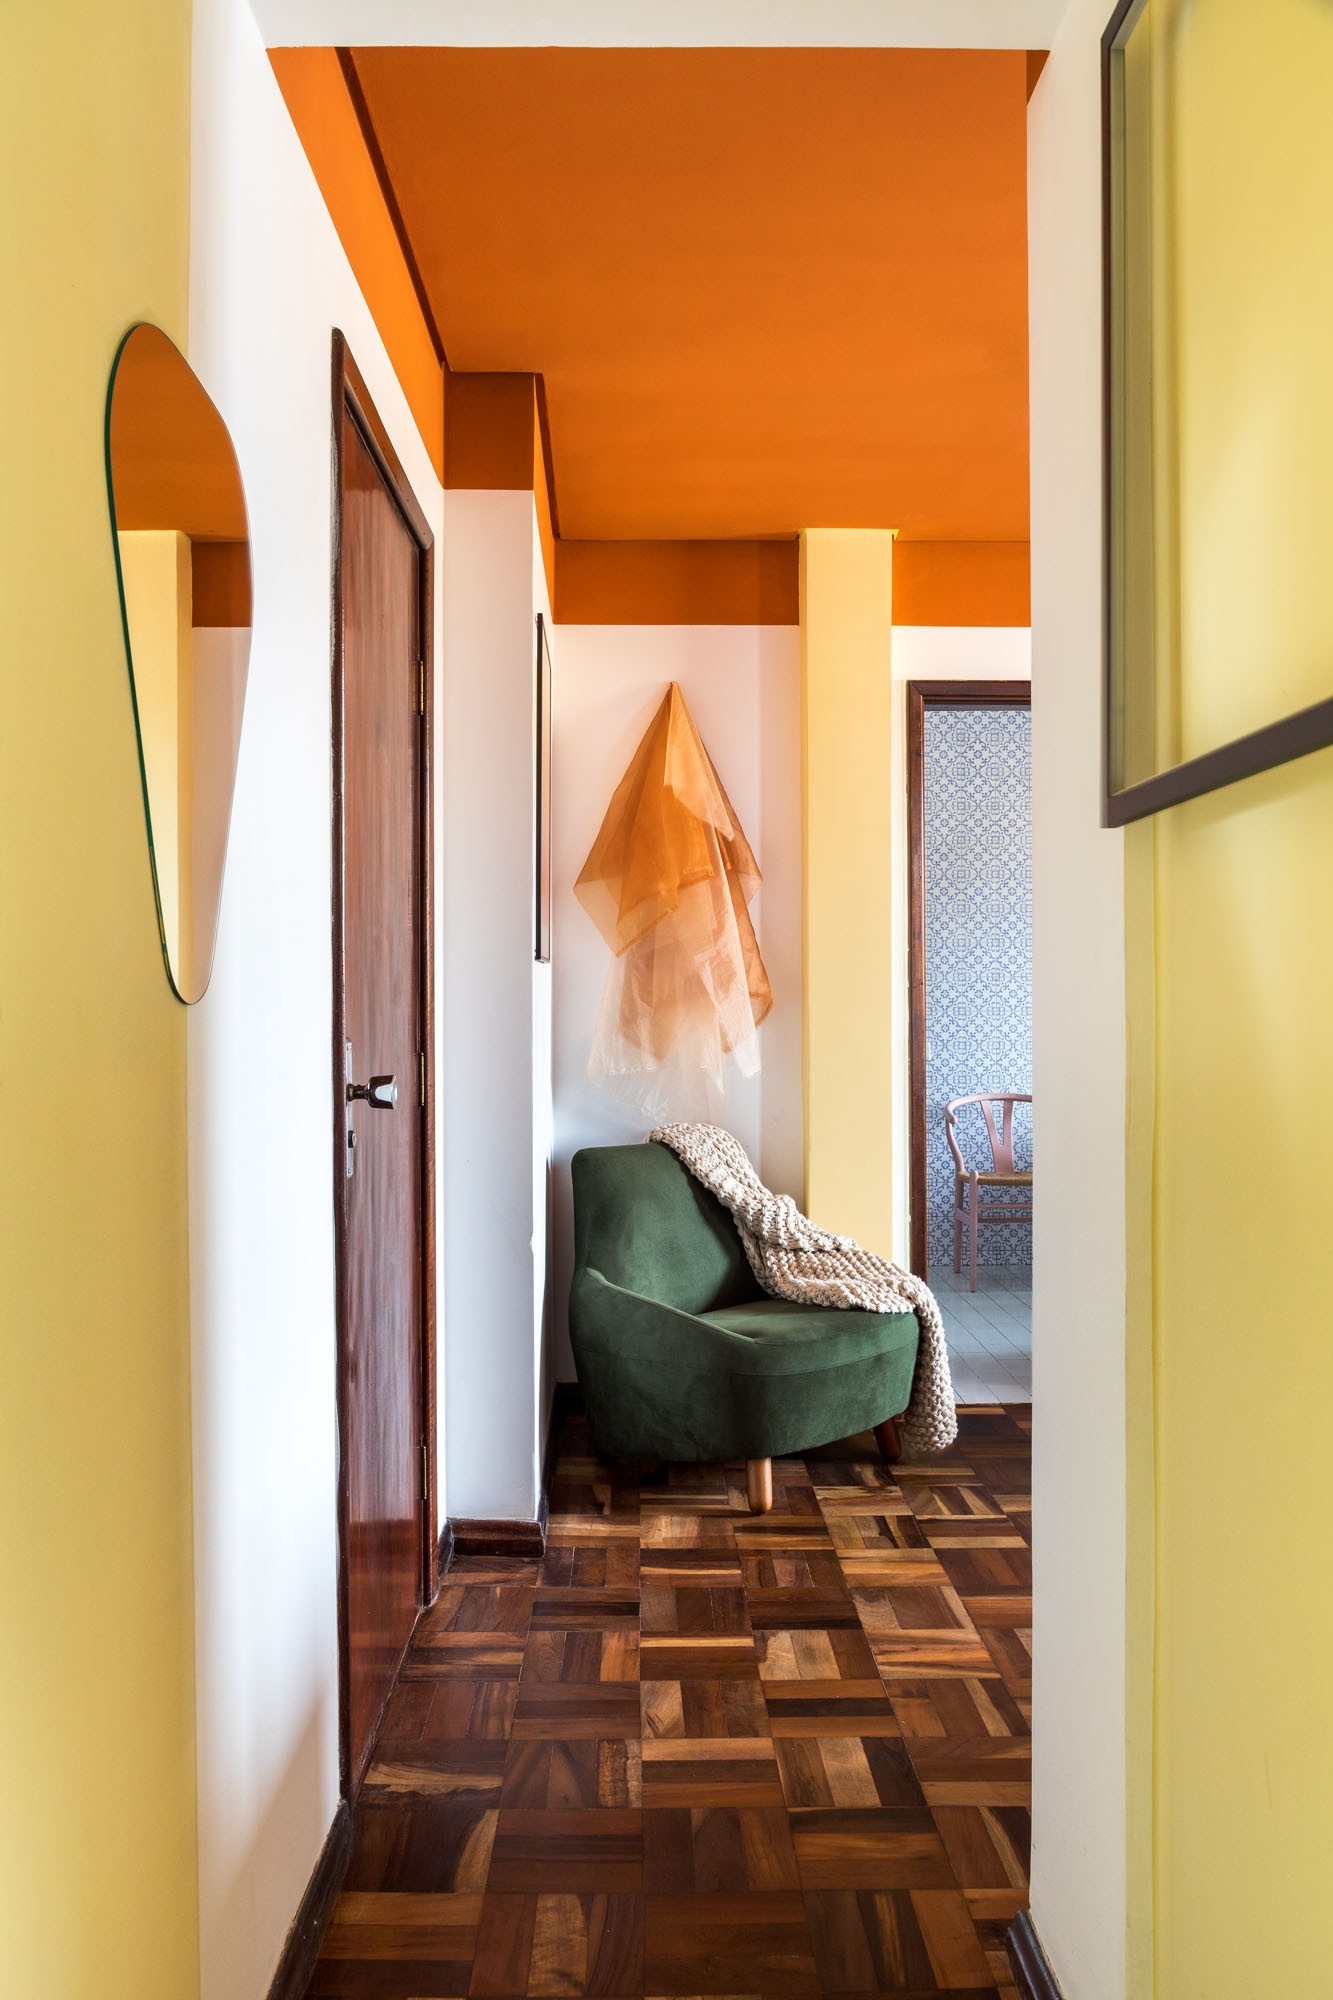 Cores para sala: 5 opções para transformar a decoração (Foto: Eduardo Macarios)